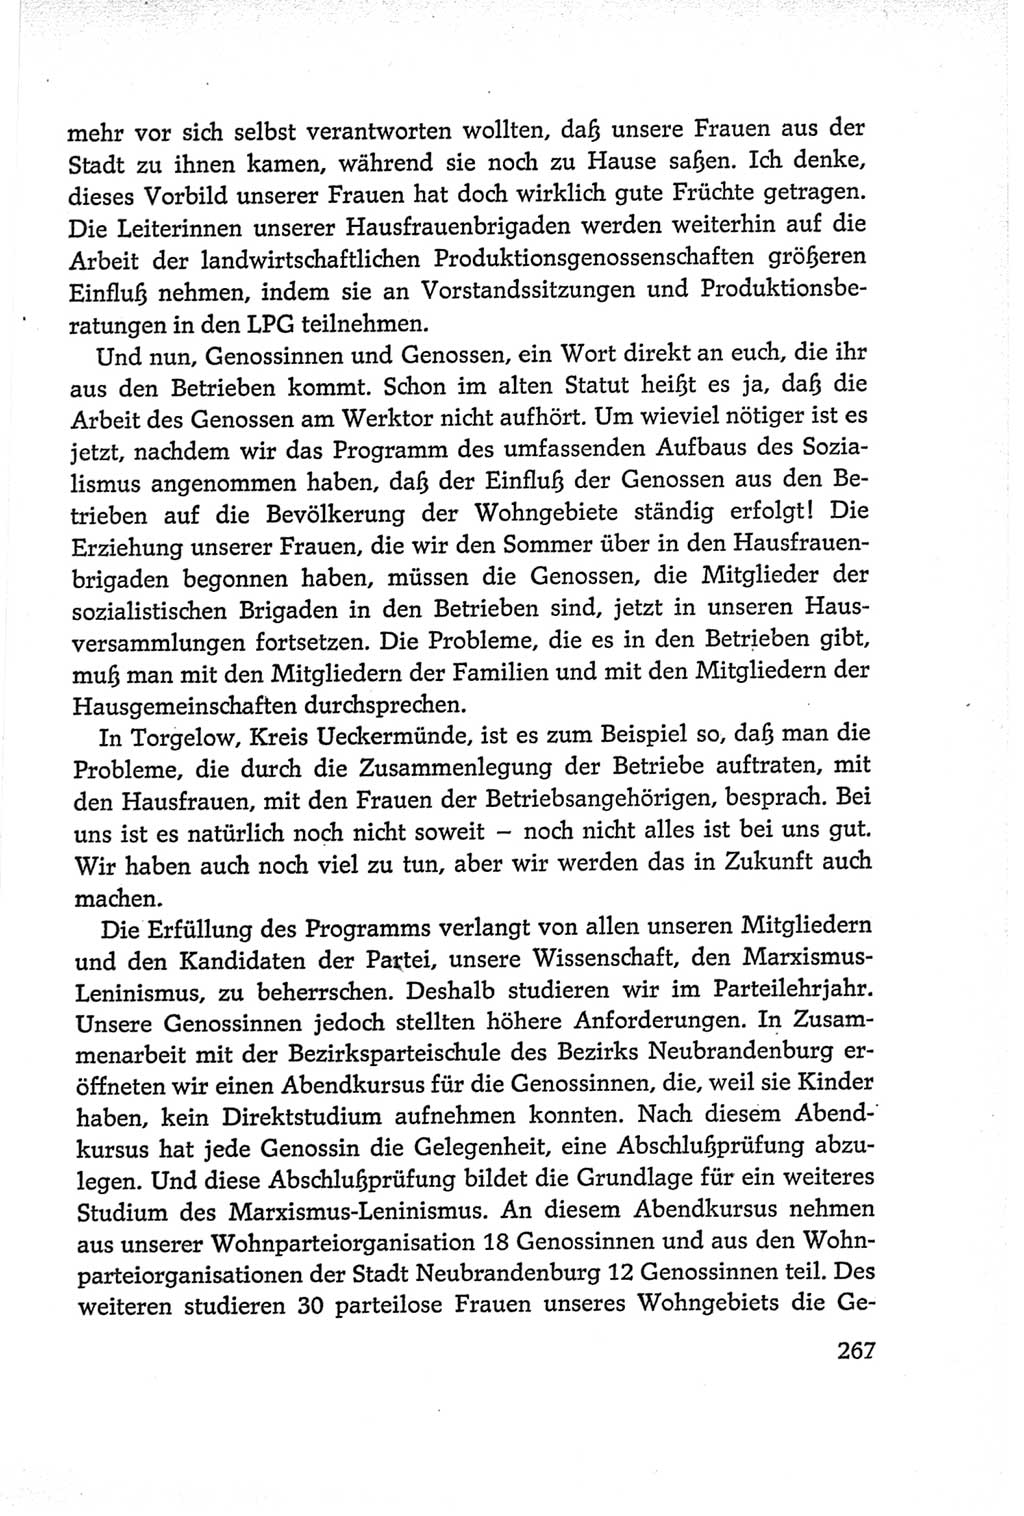 Protokoll der Verhandlungen des Ⅵ. Parteitages der Sozialistischen Einheitspartei Deutschlands (SED) [Deutsche Demokratische Republik (DDR)] 1963, Band Ⅱ, Seite 267 (Prot. Verh. Ⅵ. PT SED DDR 1963, Bd. Ⅱ, S. 267)